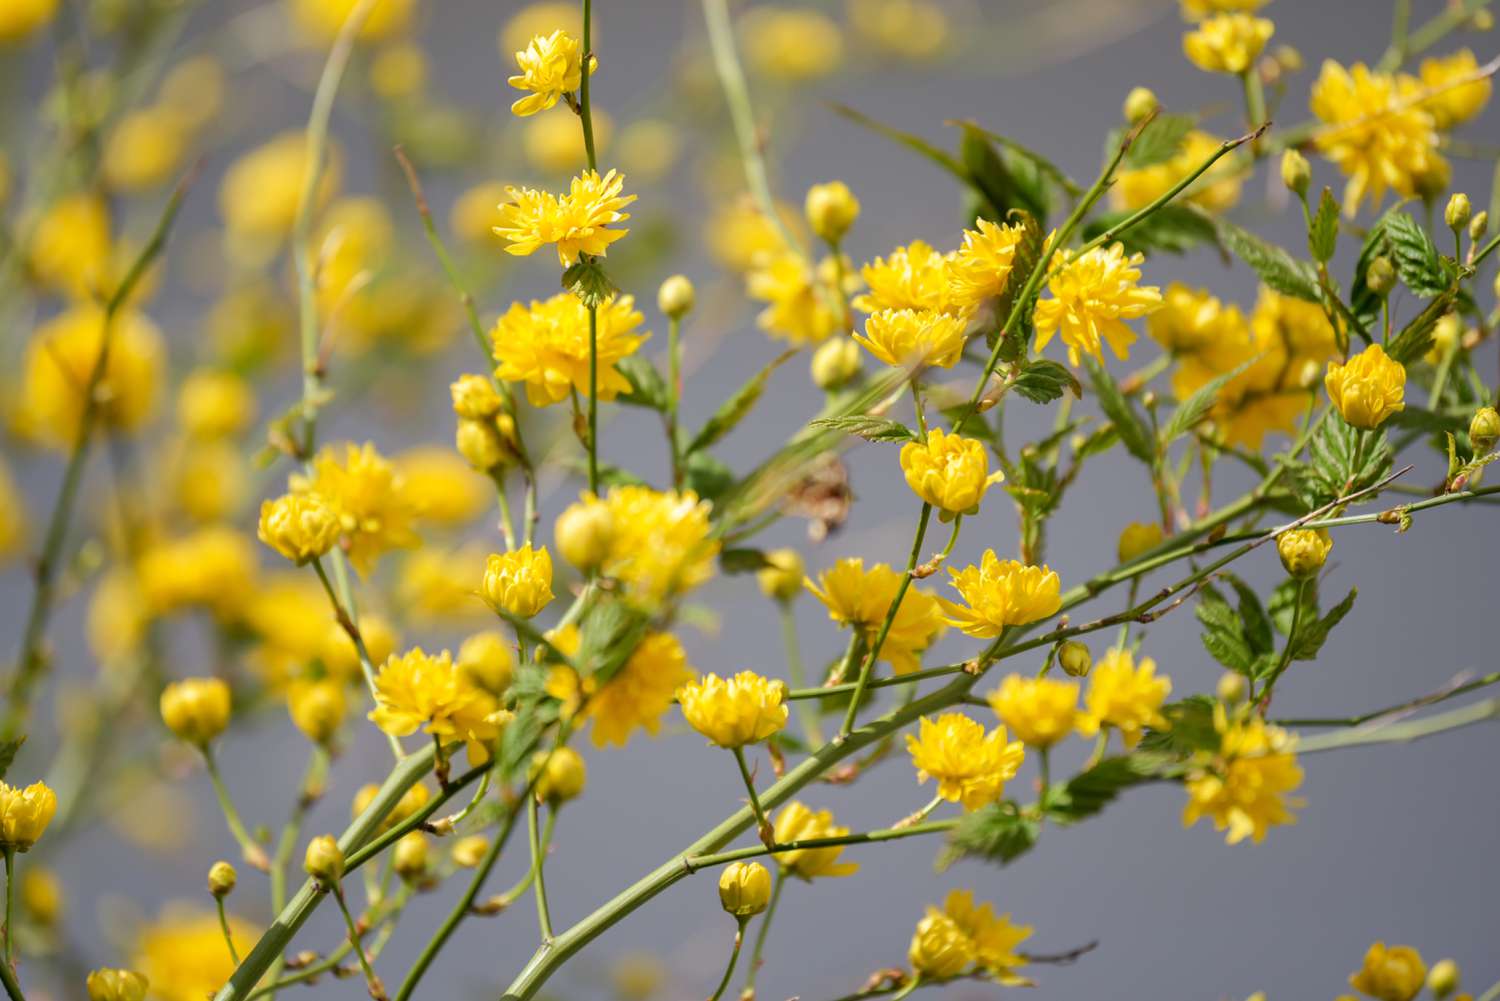 Kerria arbusto com flores amarelas fofas e botões em galhos longos e finos